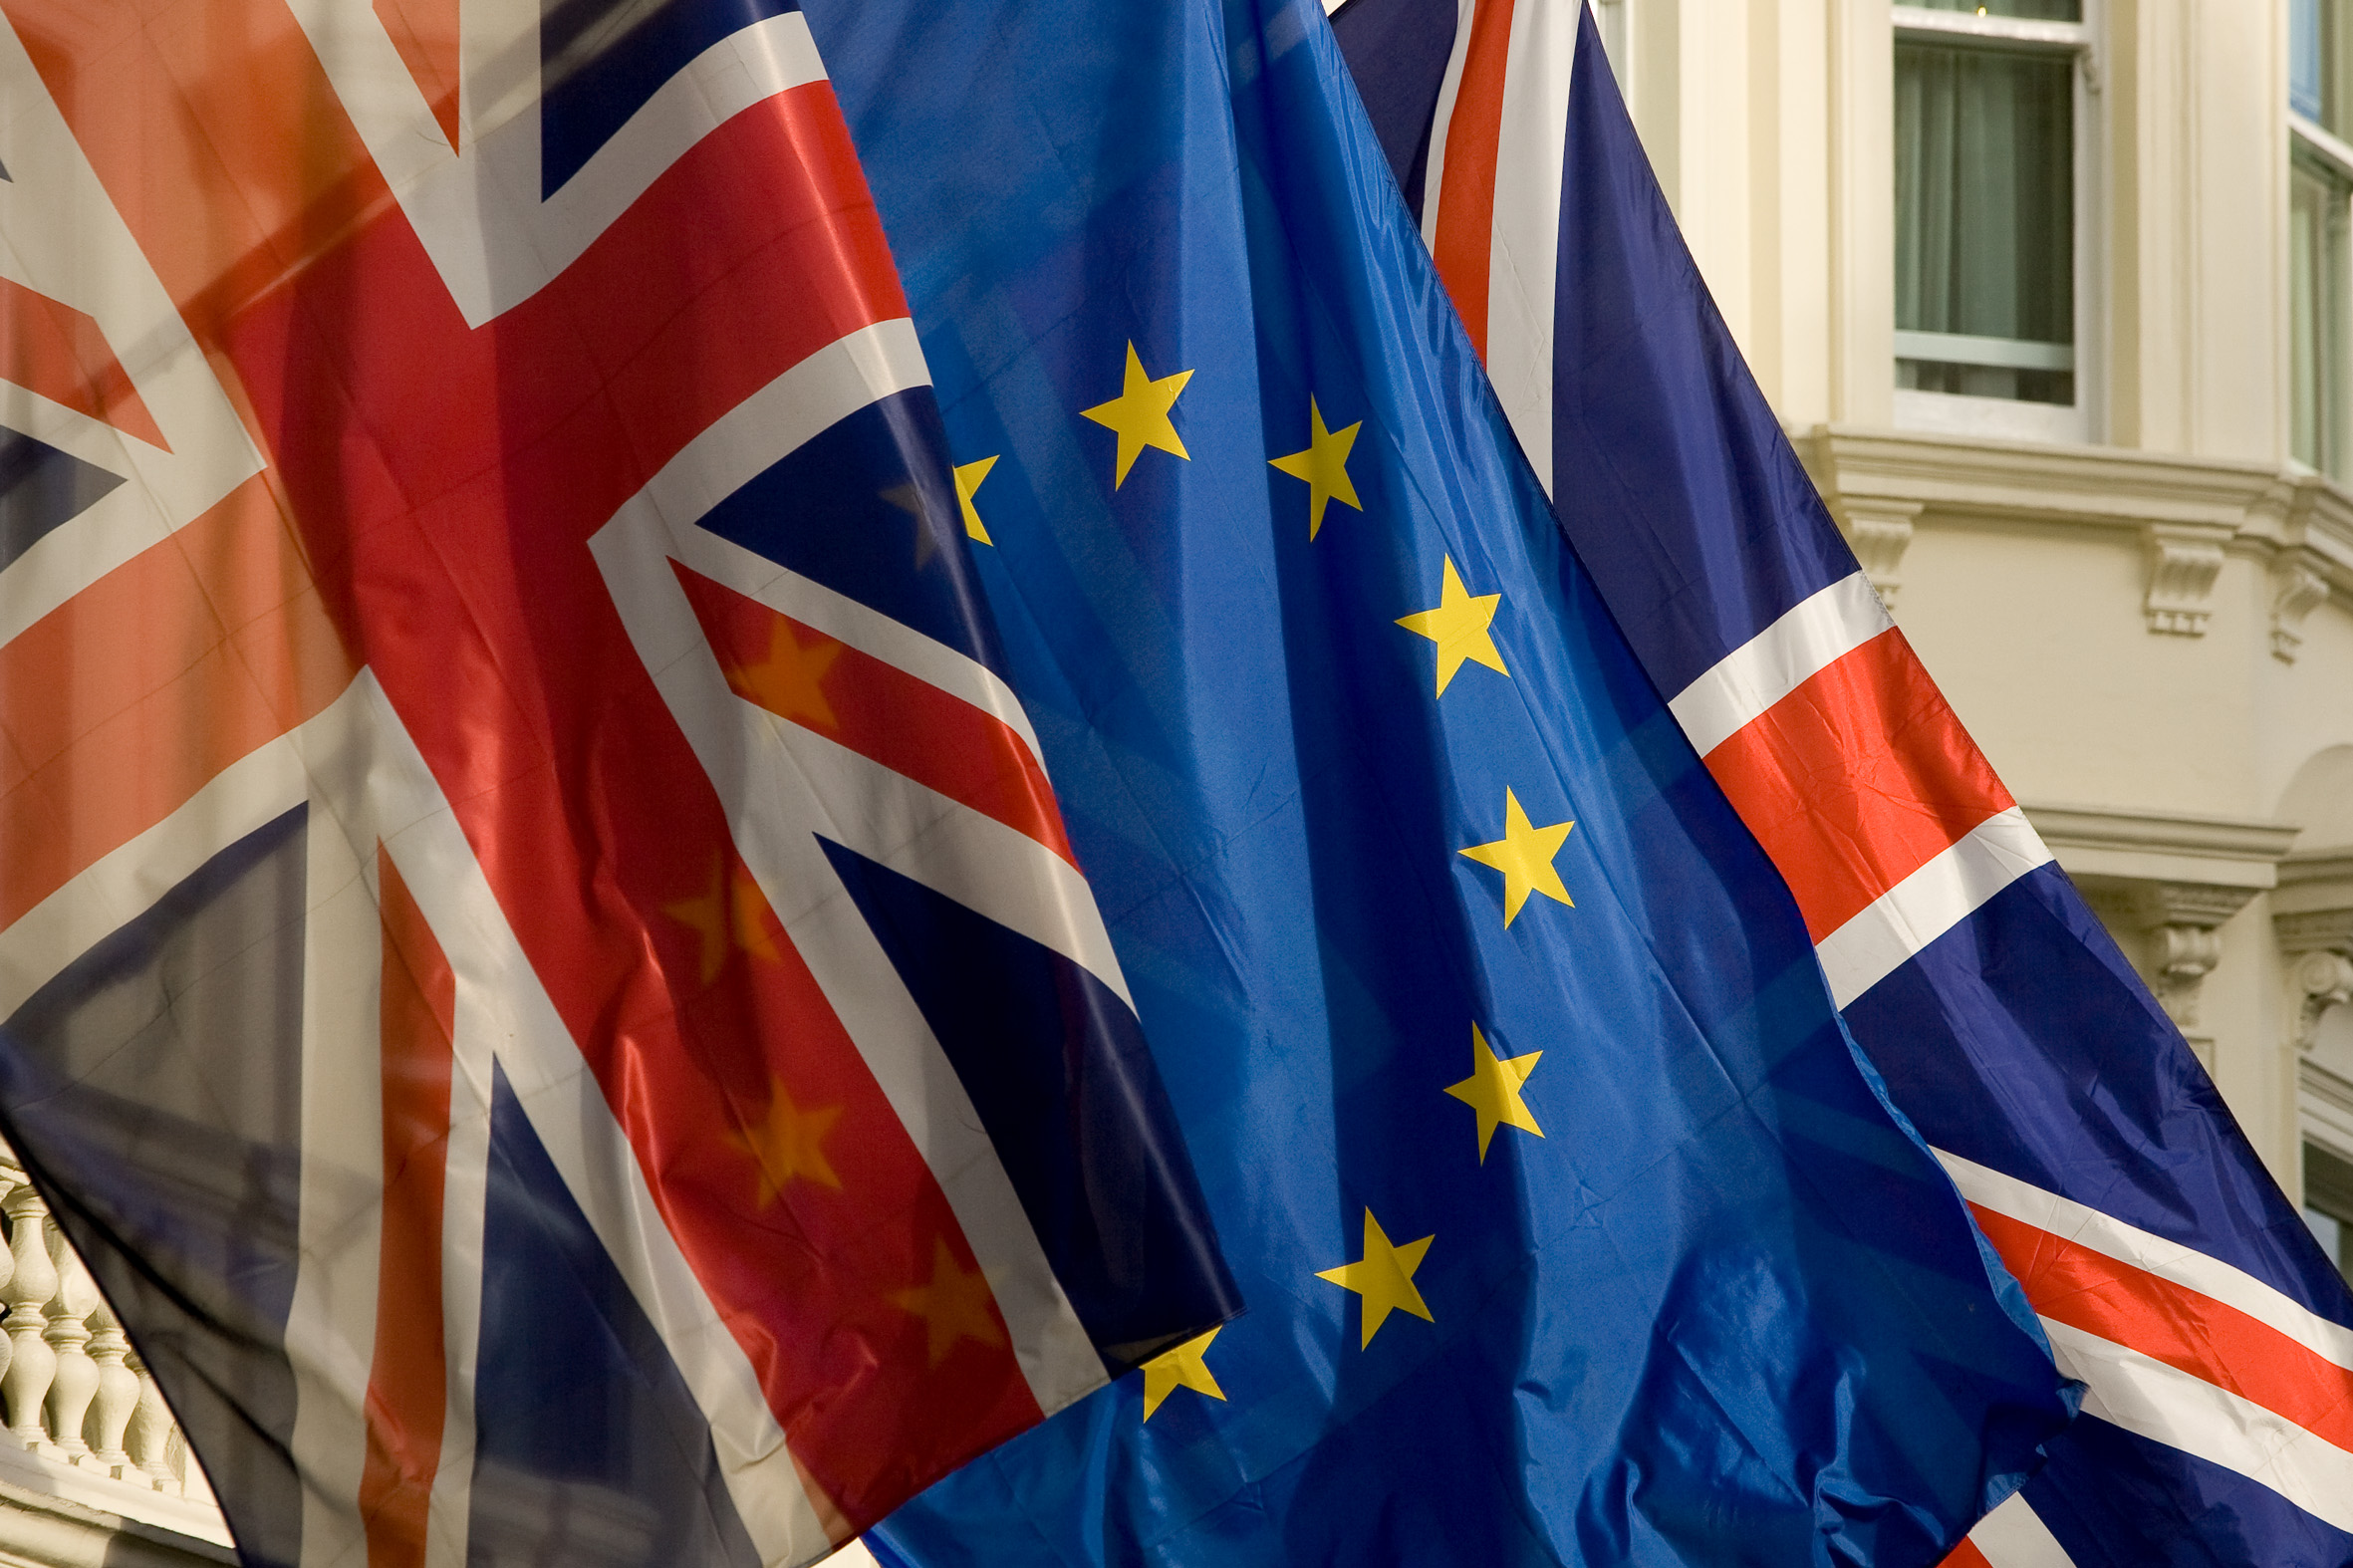 Flagi Wielkiej Brytanii i Unii Europejskiej powiewają przedz zabytkowym budynkiem.